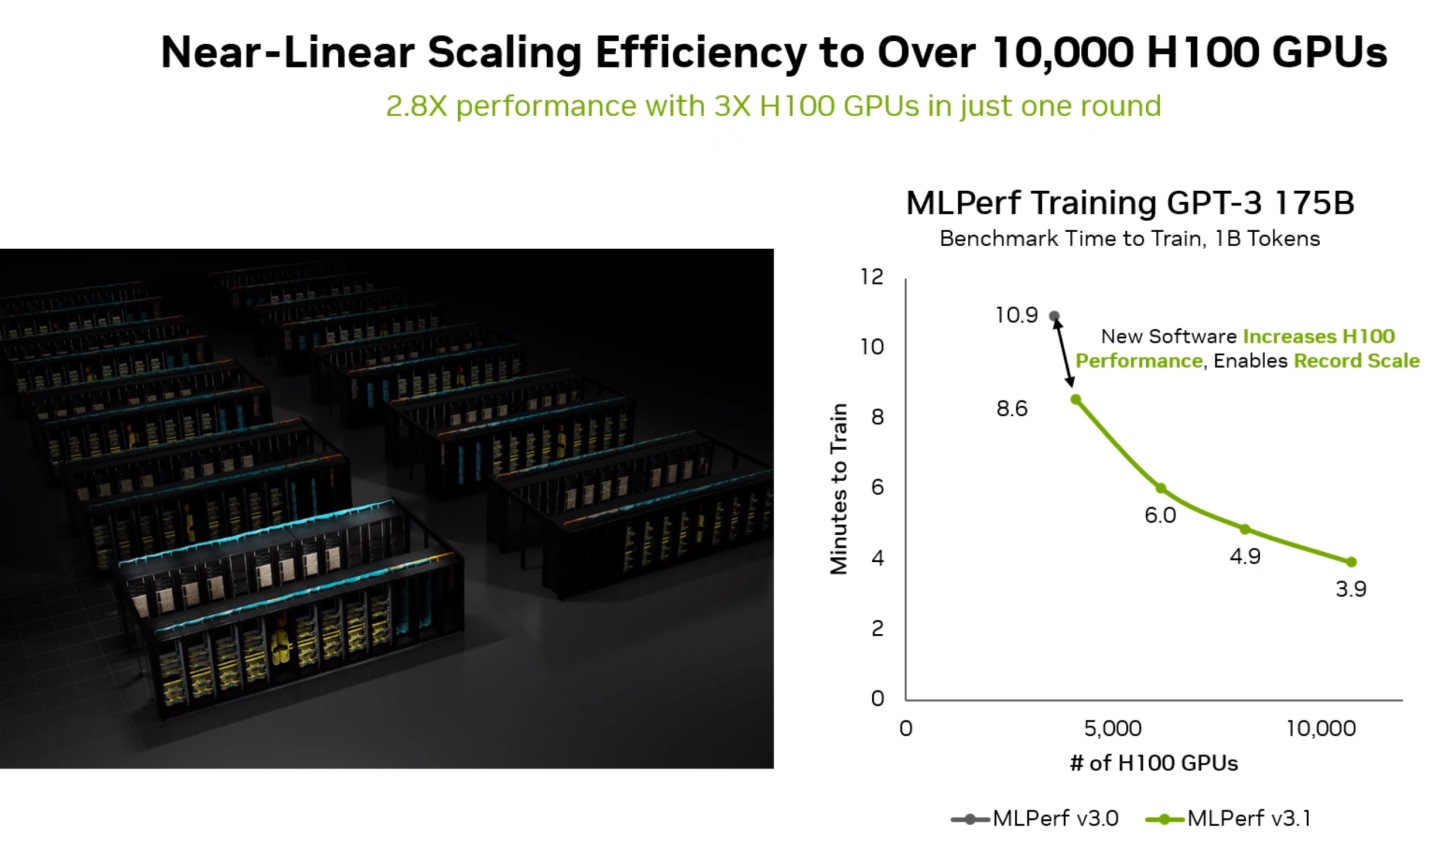 運算叢集的H100 GPU數量由3,584組擴充至3倍的10,752組，而效能提升約2.8倍，換算之下Scale-Out的效率高達93%。